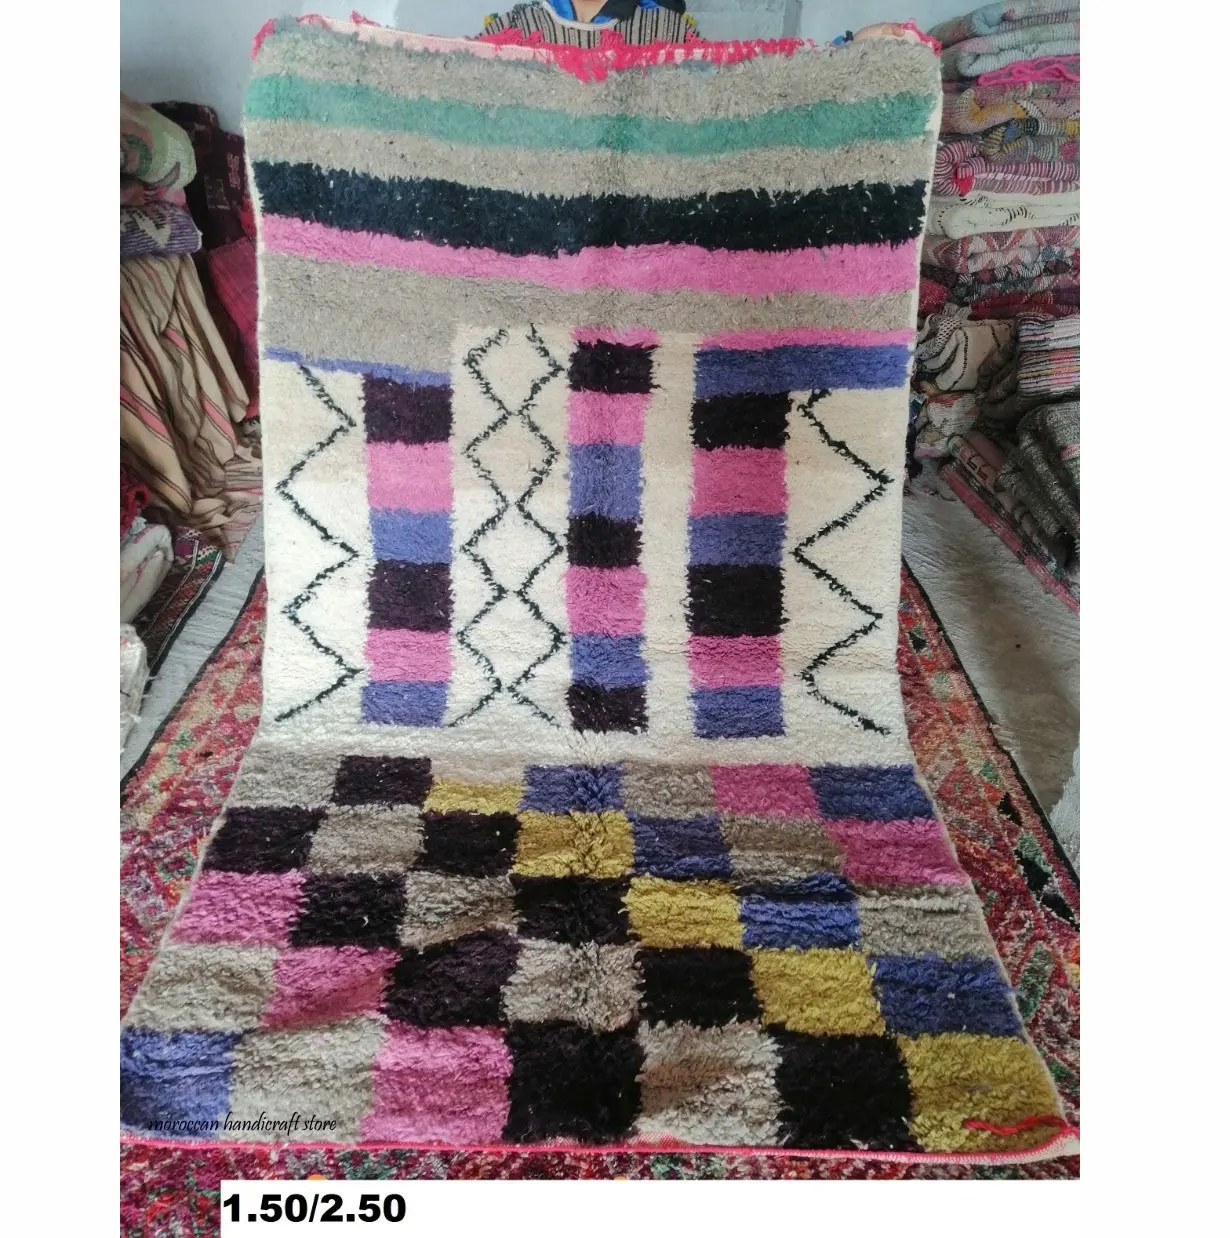 pattern living room rug Moroccan Trellis Design Area Rug, large size decorative bedside carpet, modern type